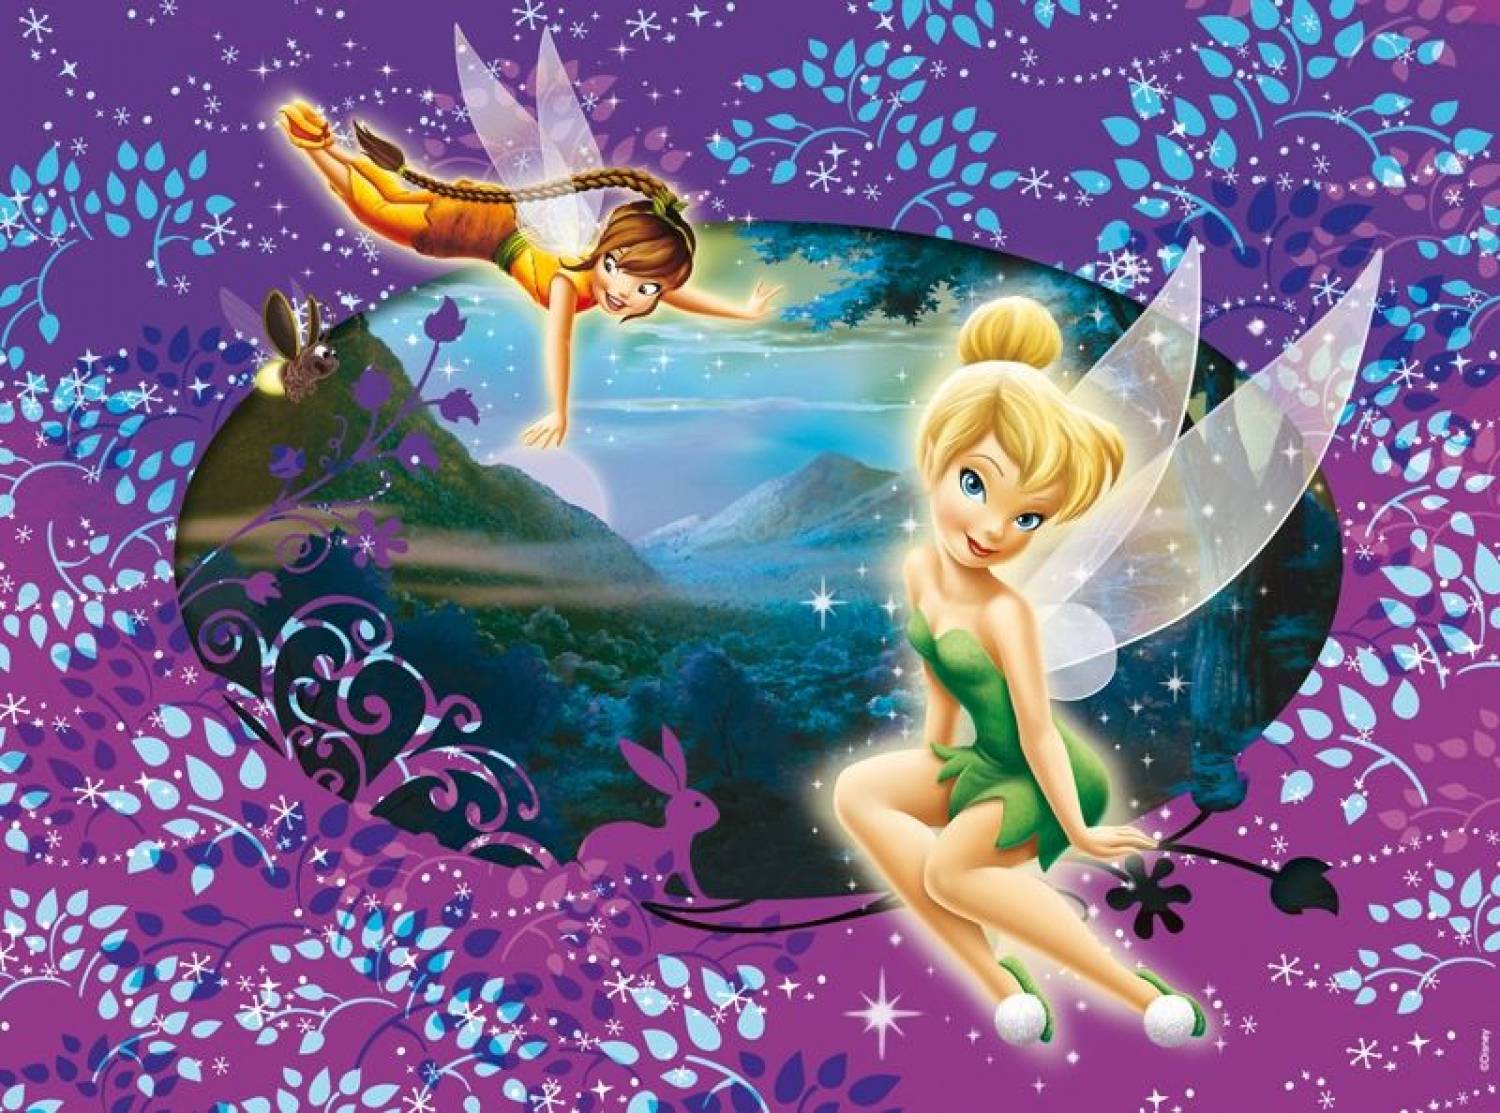 Disney Fairies Rosetta Wallpaper Image Amp Pictures Becuo